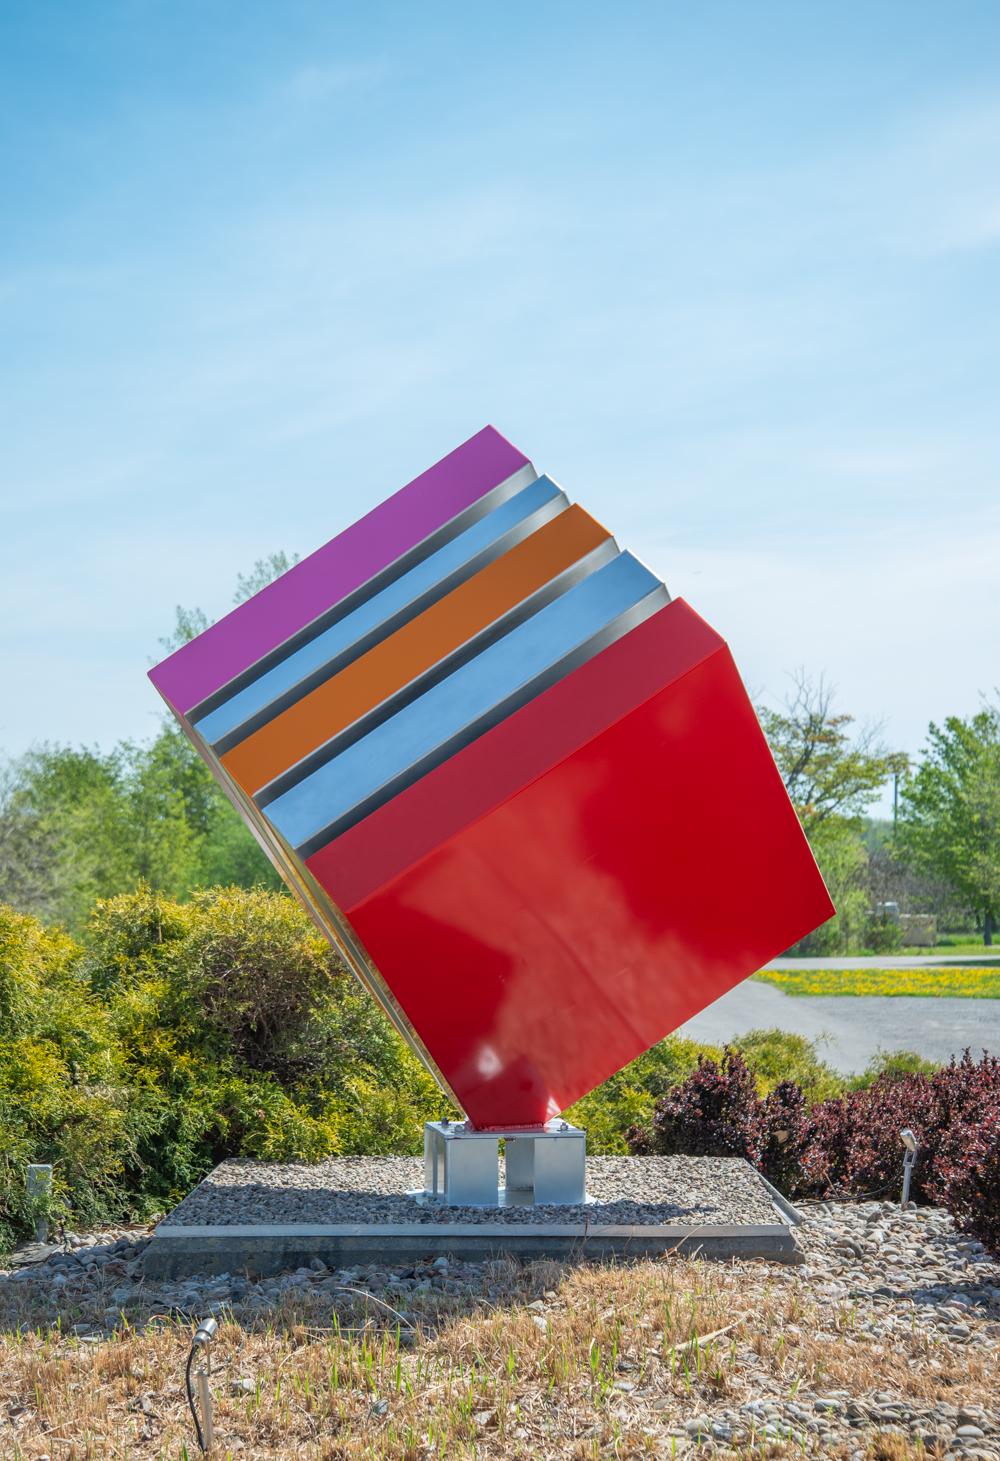 La dernière sculpture de Philippe Steele - un grand cube d'acier aux couleurs de bonbons - est composée de bandes peintes en rouge, orange et rose vifs qui s'équilibrent sur un coin. L'artiste québécois conçoit des pièces de pop art qui reflètent la